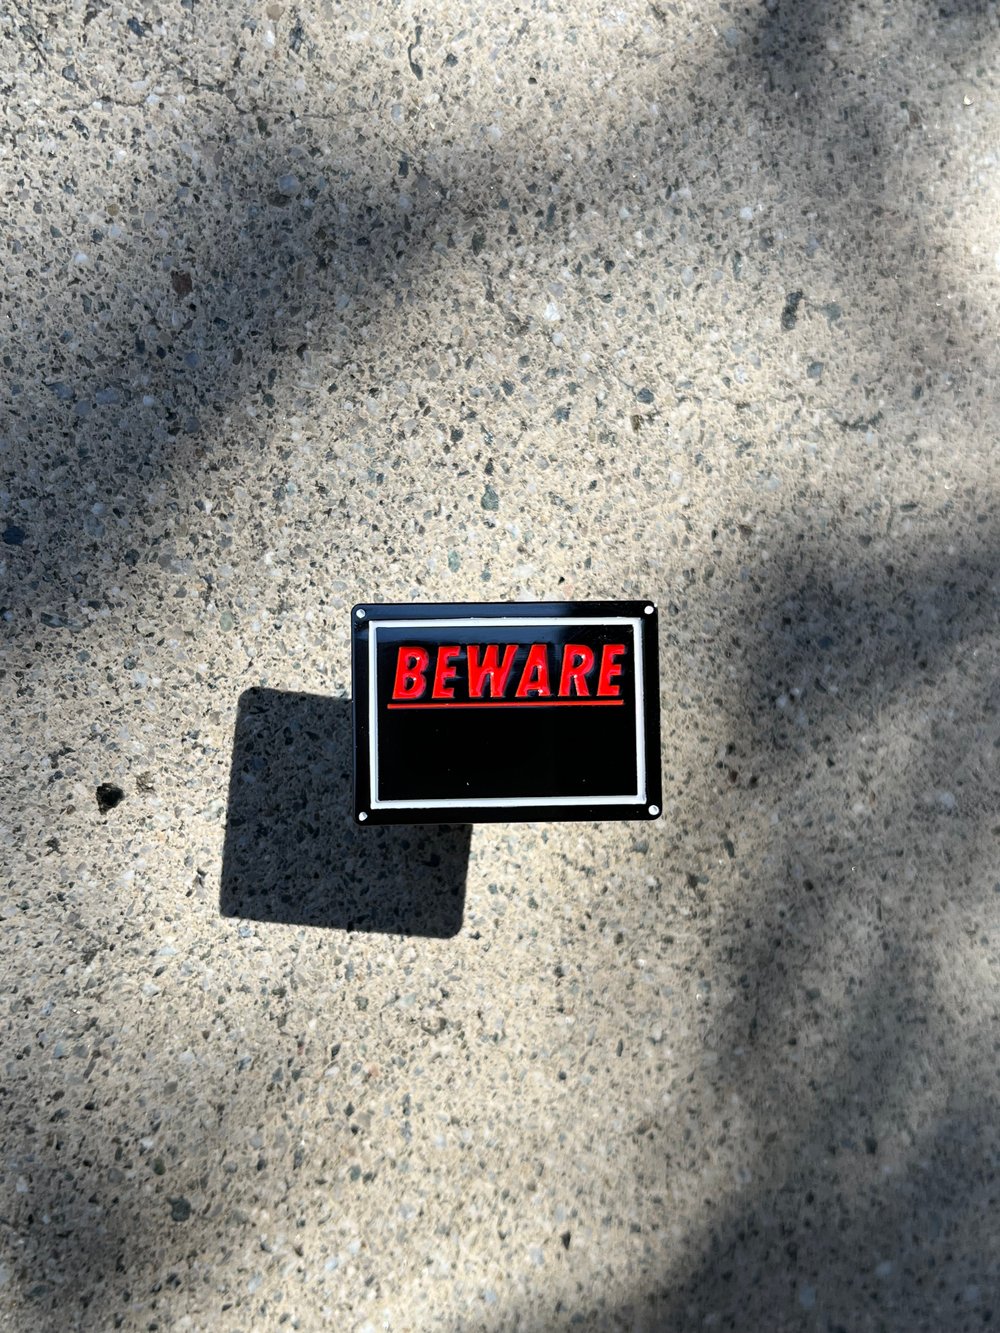 RR#149 Beware (of dog) sign Pin